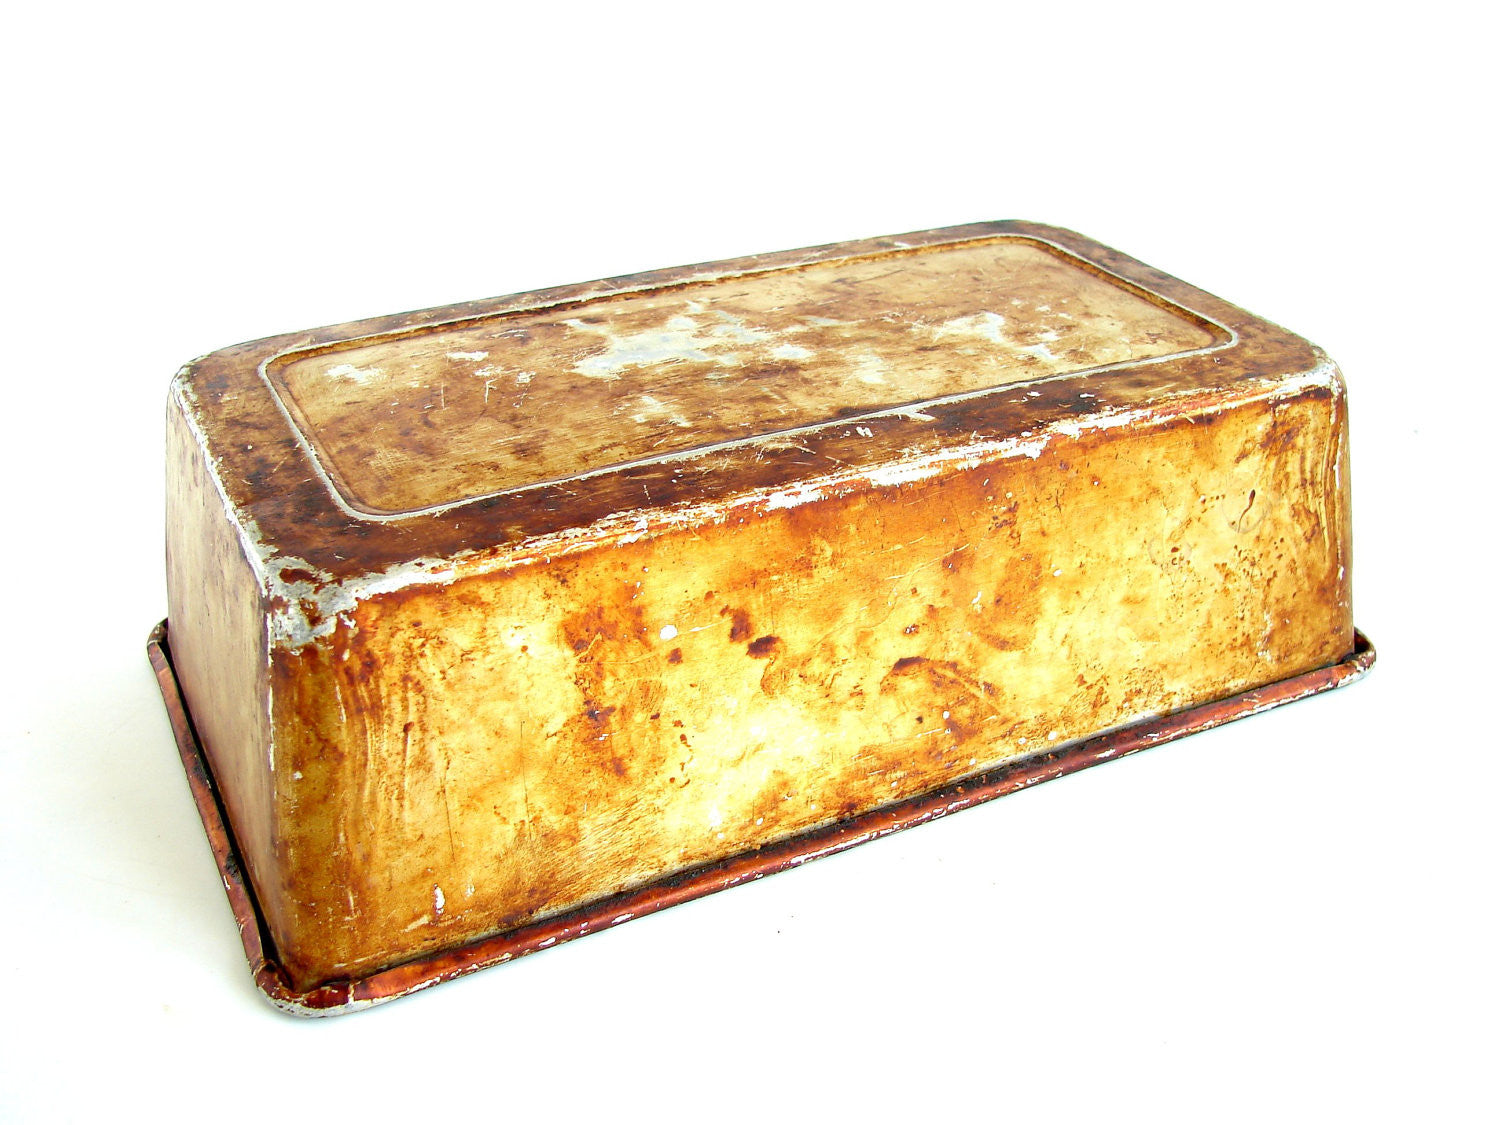 Vintage 1960s ECKO NO. R-407 Loaf Pan Tin Metal Bread Cake Baking 8 3/8 X 4  3/8”